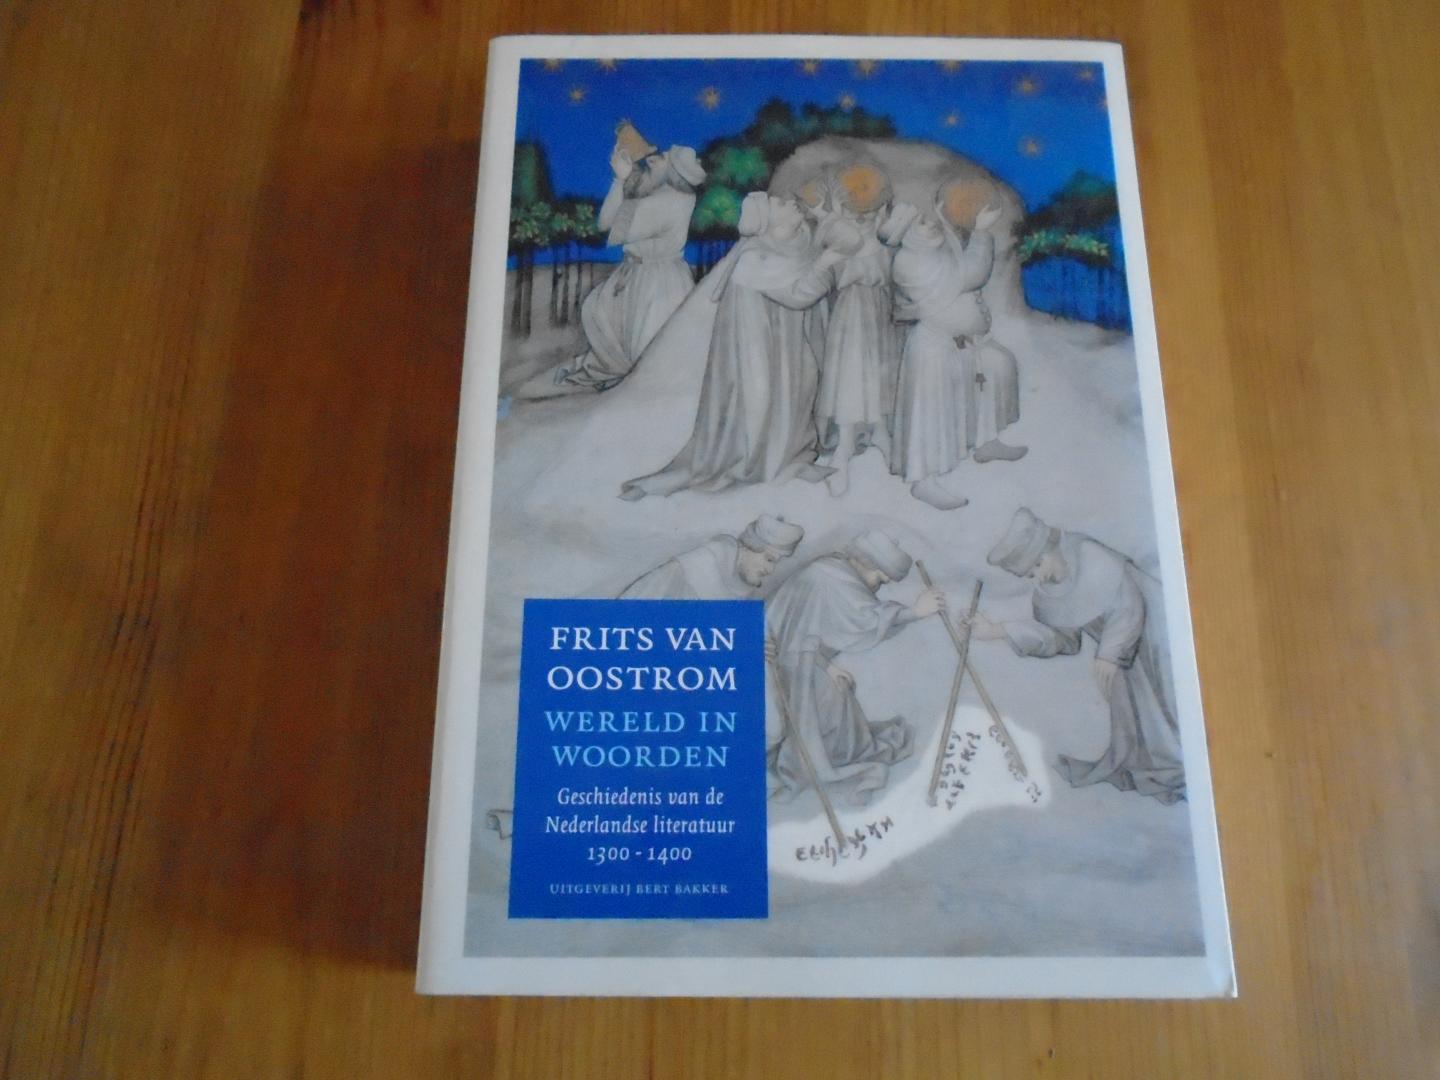 Oostrom - Wereld in woorden. Geschiedenis van de Nederlandse literatuur 1300-1400